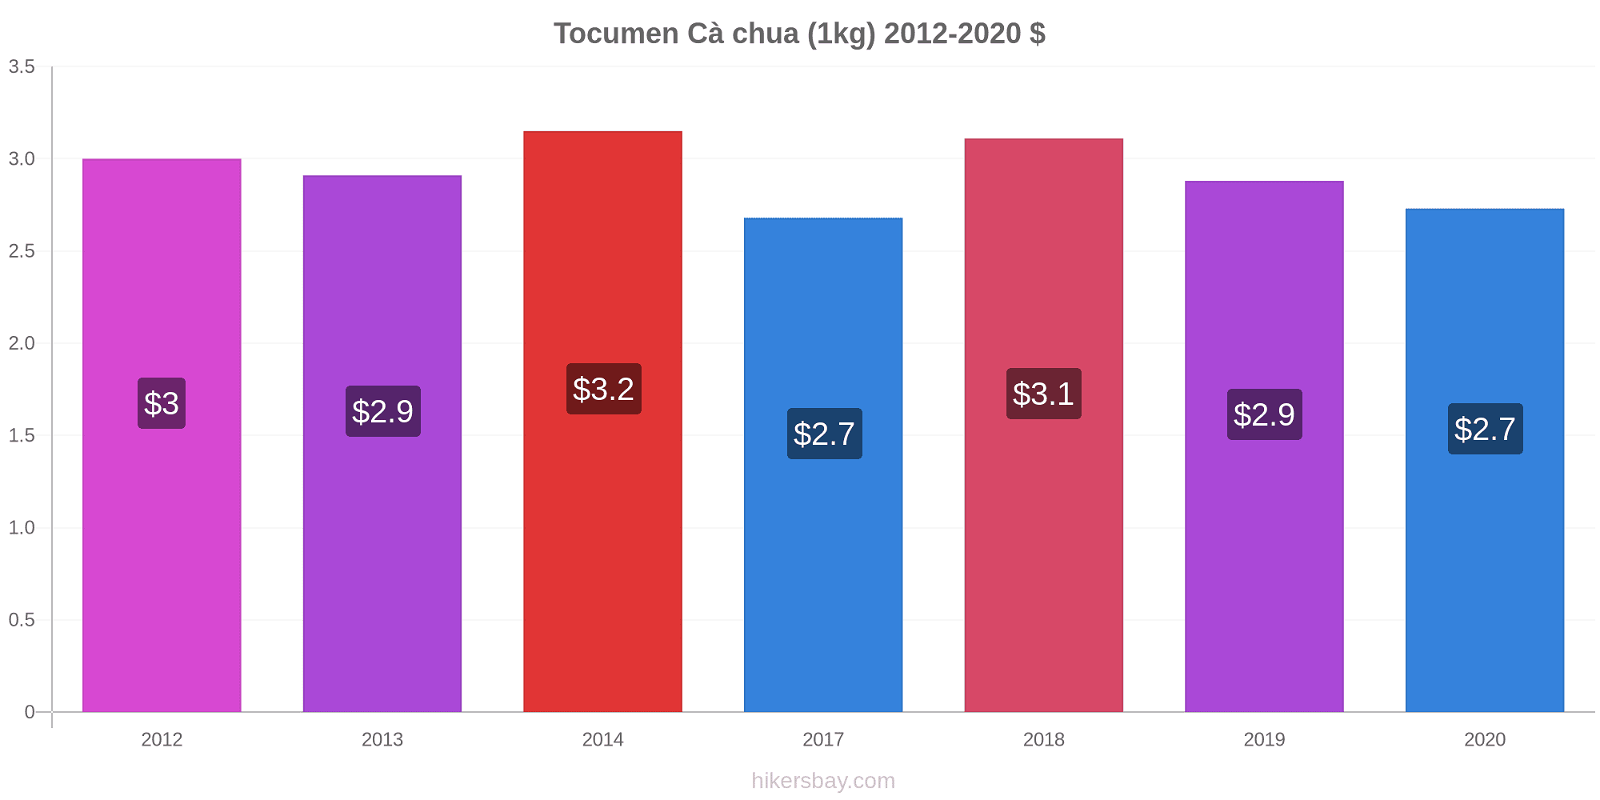 Tocumen thay đổi giá Cà chua (1kg) hikersbay.com